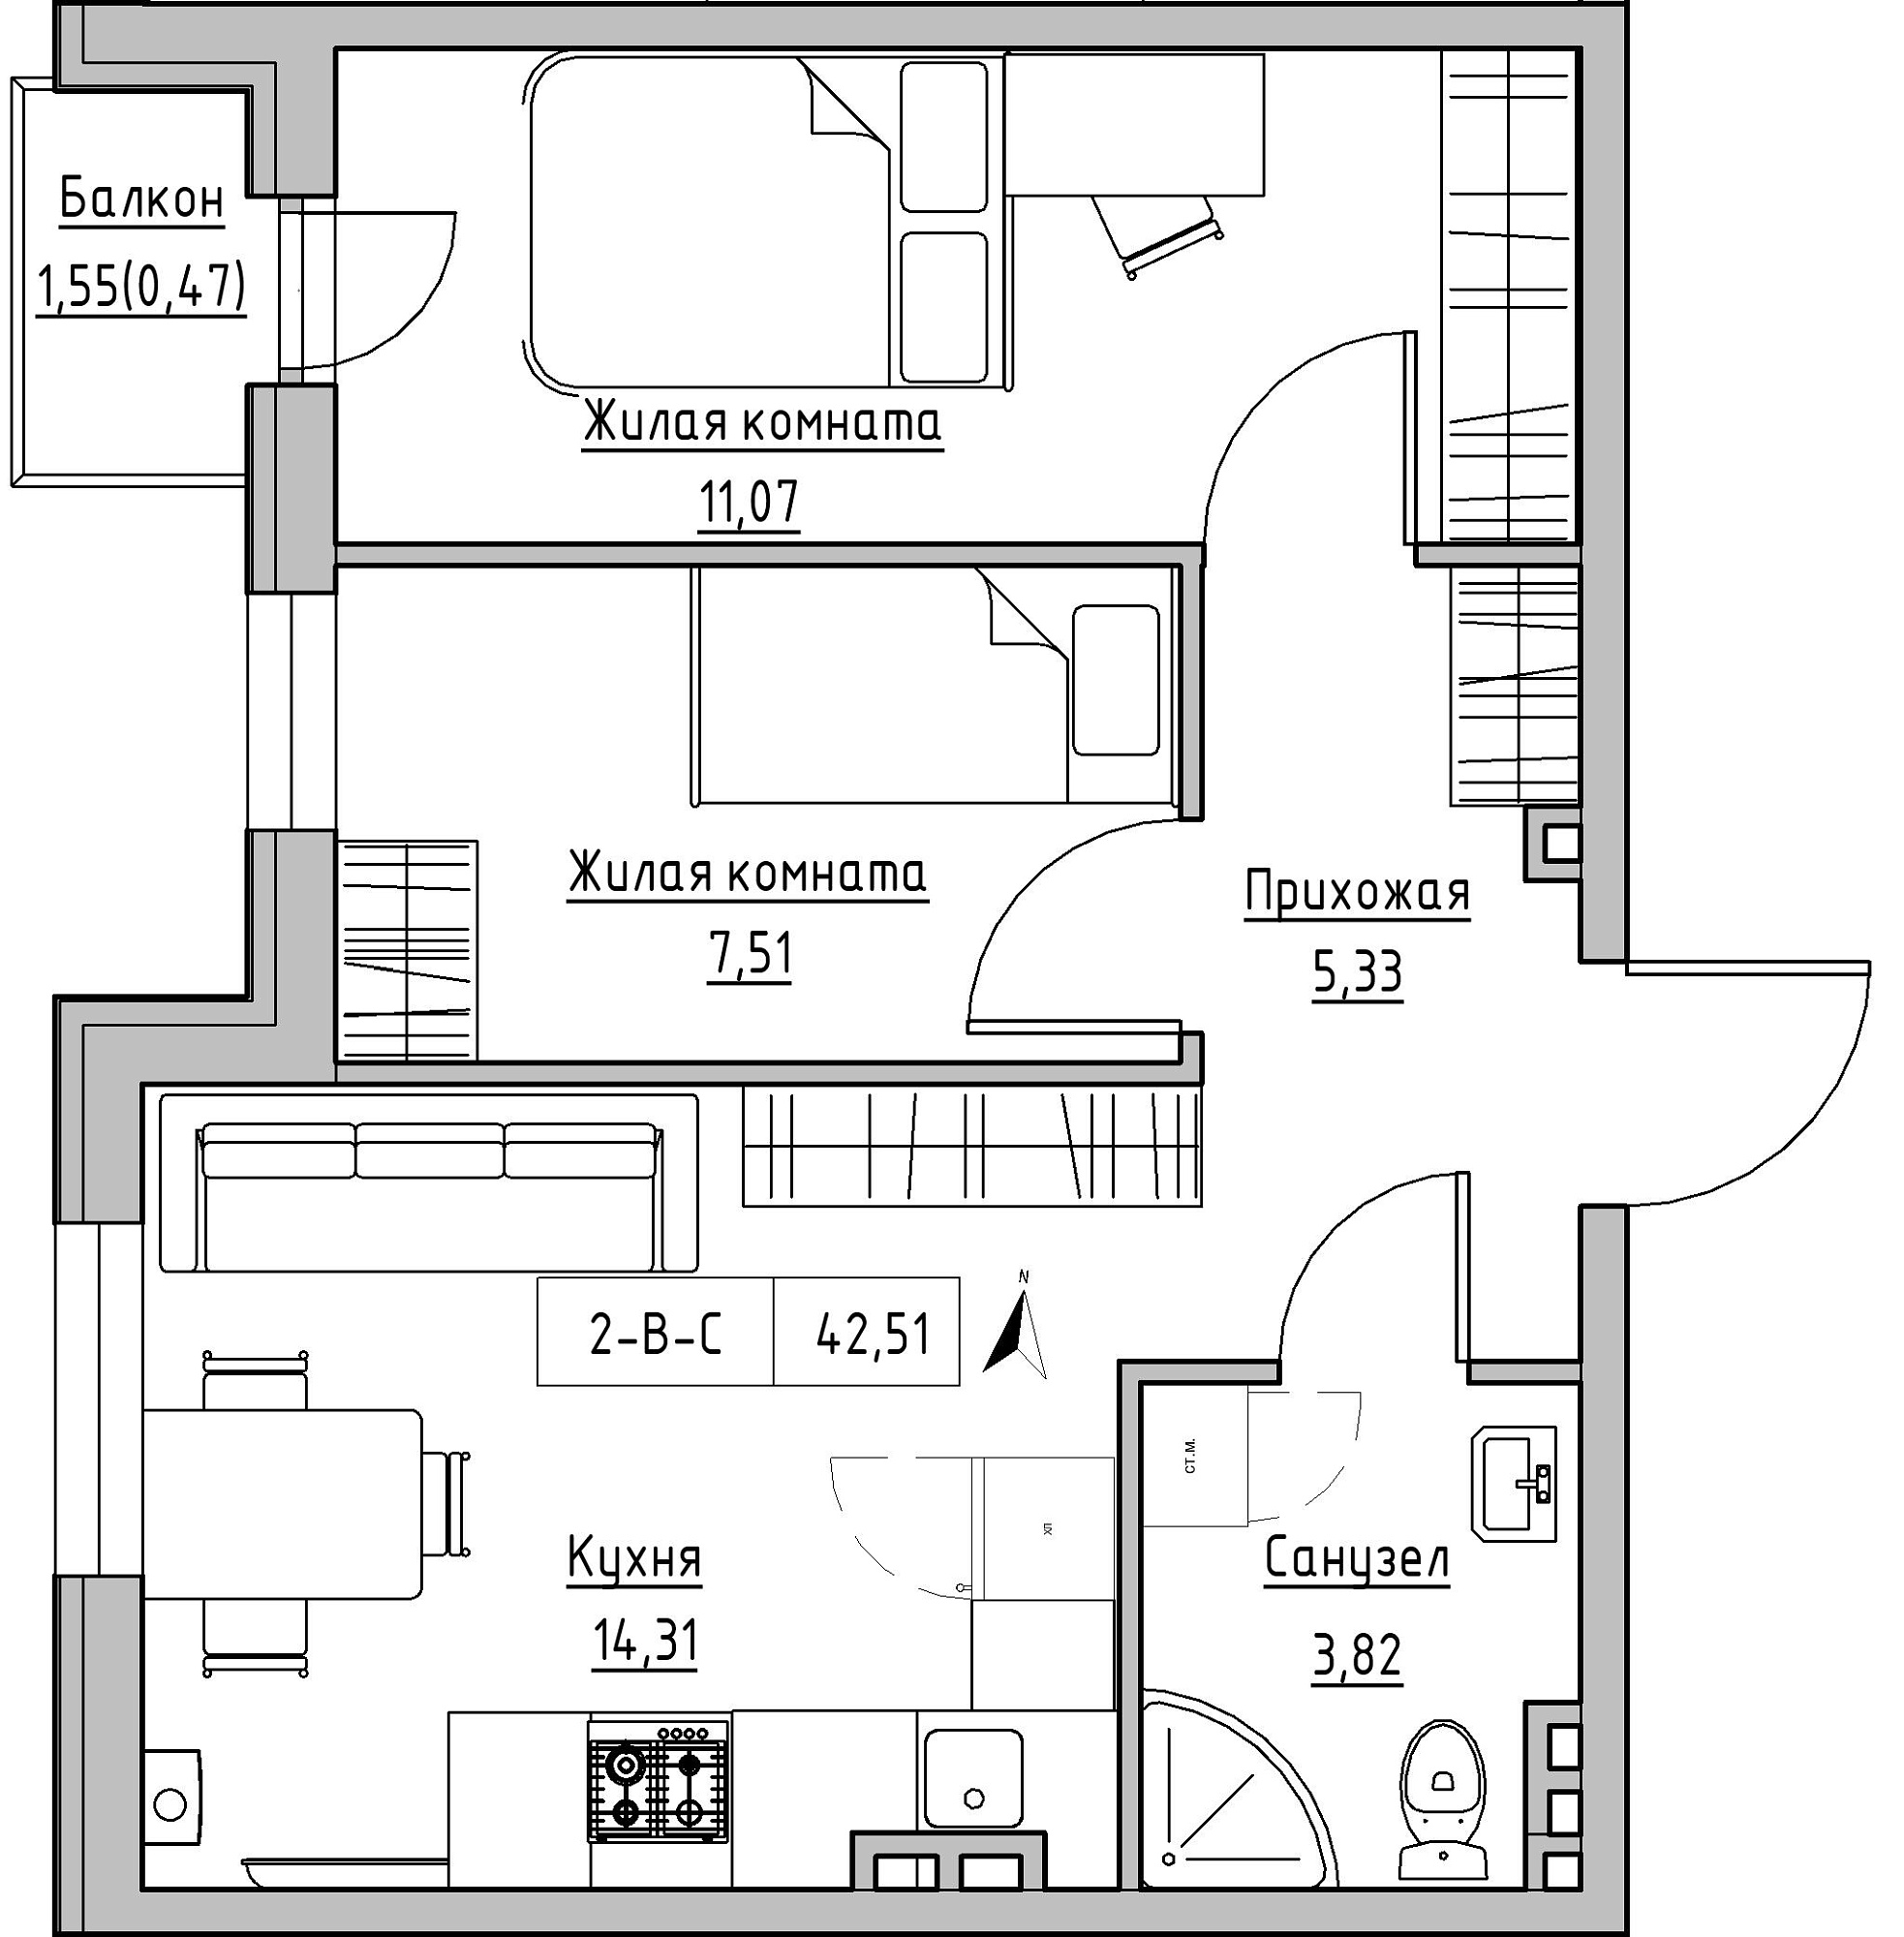 Планування 2-к квартира площею 42.51м2, KS-024-02/0010.